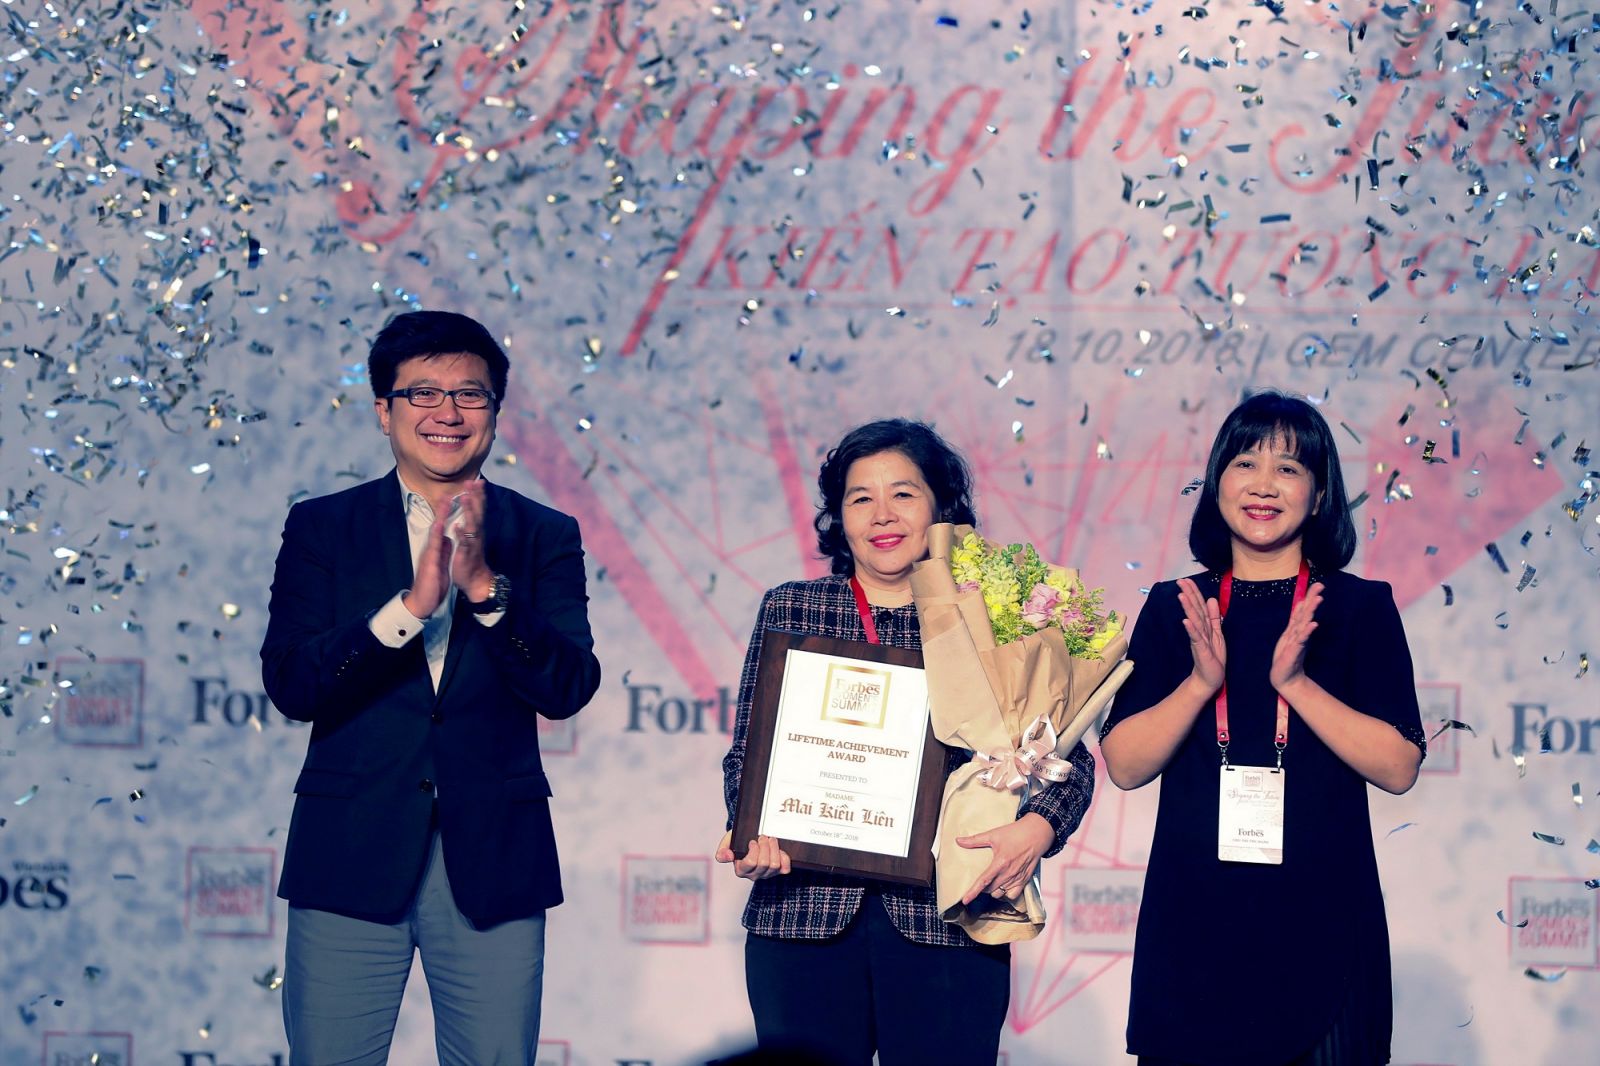 Ông Nguyễn Bảo Hoàng – Chủ tịch Công ty Truyền thông Tương tác, Forbes Việt Nam và bà Chu Thị Thu Hằng, Tổng biên tập báo Văn hóa trao giải thưởng 